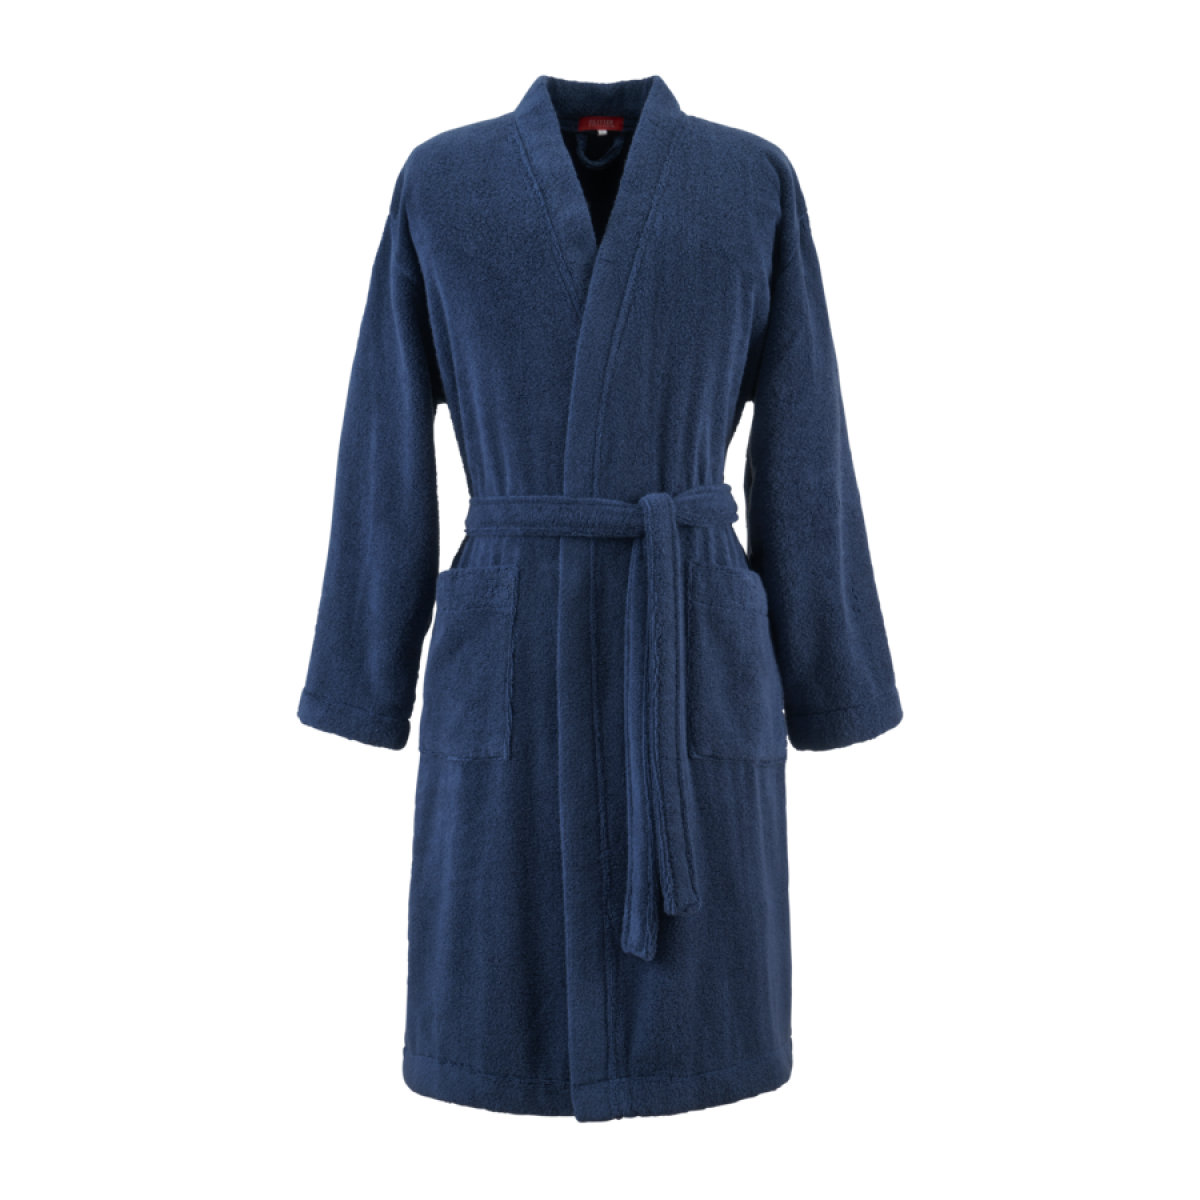 халат кимоно Desforges Paris Alize - купить в магазине Yves Delorme Russia